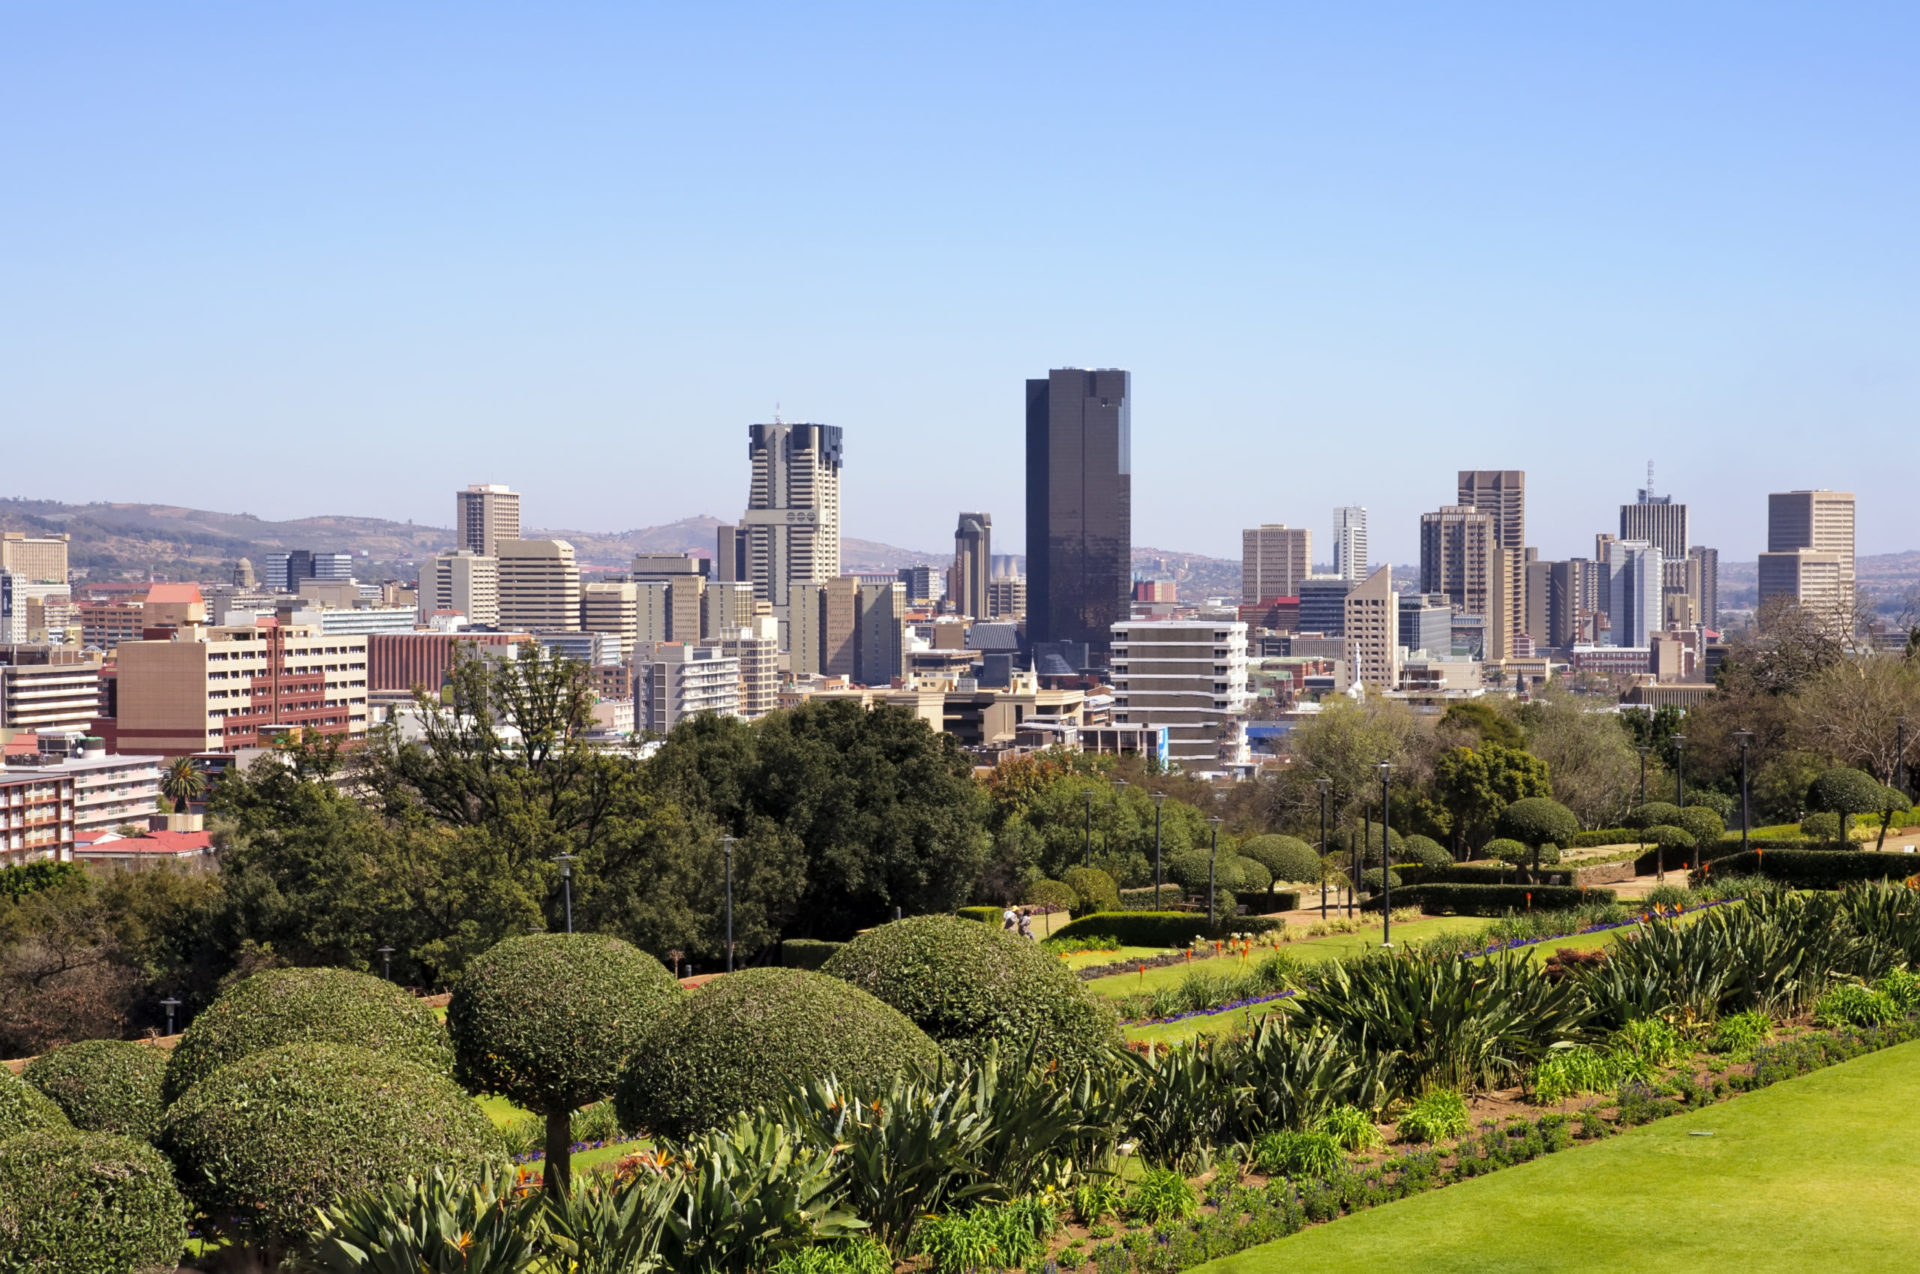 Skyline of the city of Pretoria, South Africa